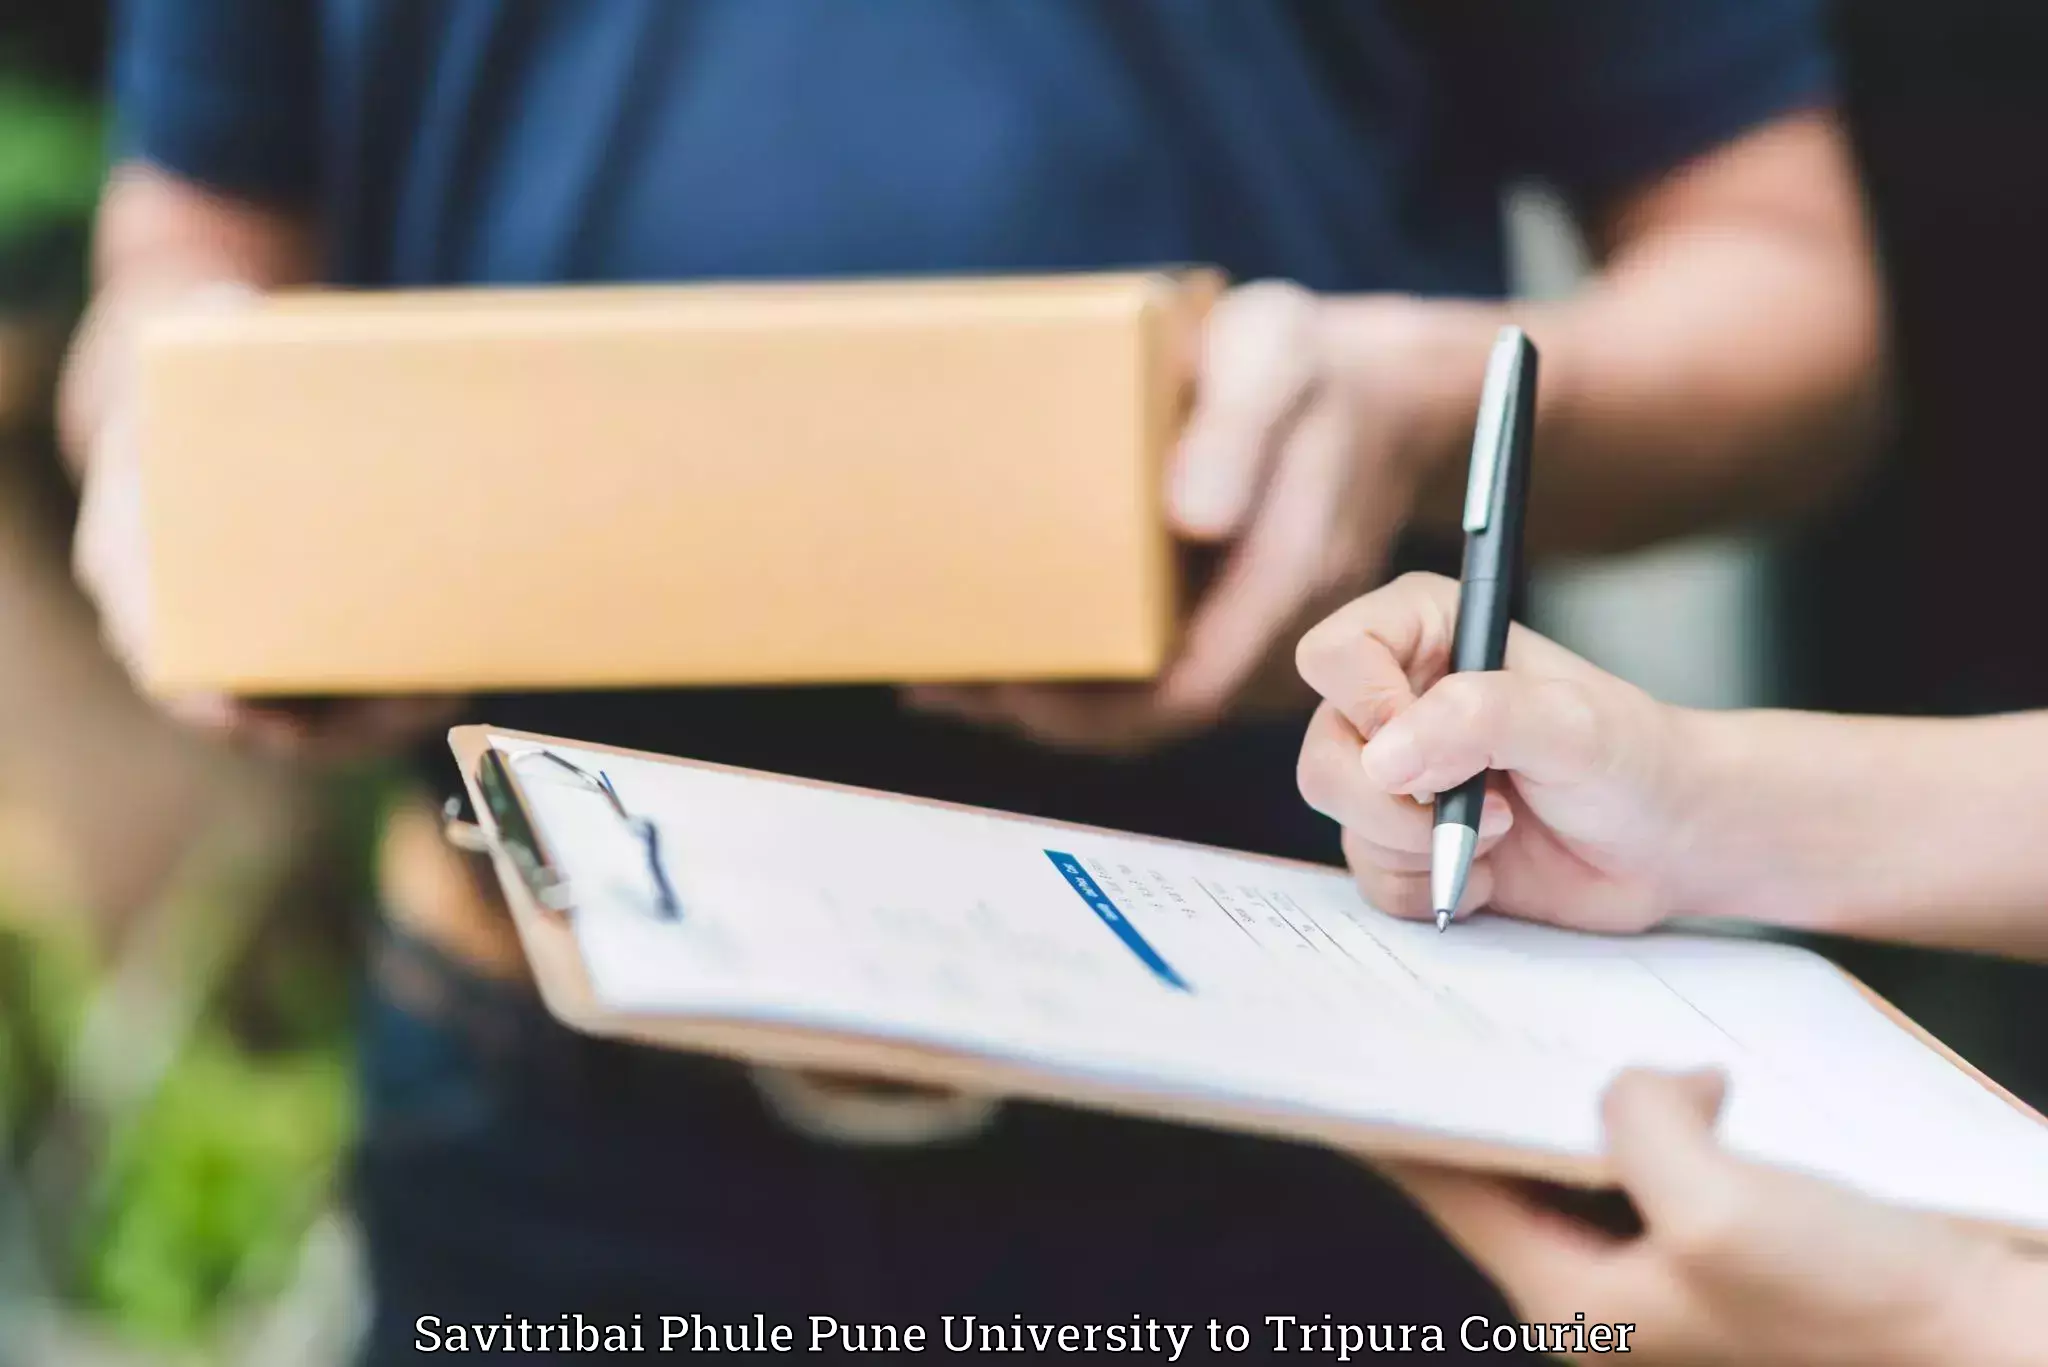 Luggage transport consultancy Savitribai Phule Pune University to Tripura